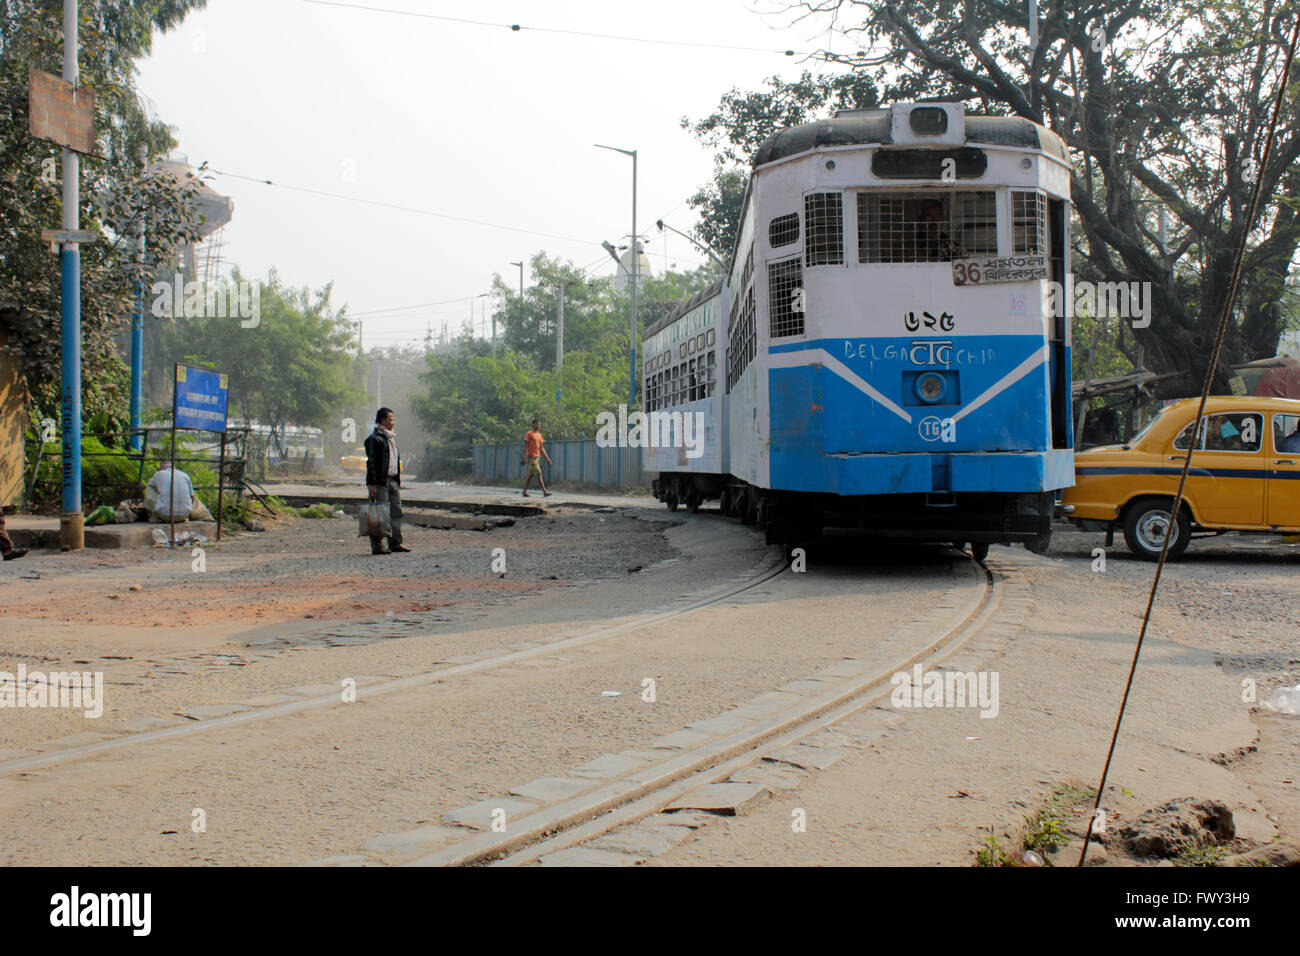 Tramway articulé à Kolkata, Inde. Géré par la société de tramway de Calcutta, c'est le seul réseau de tramway en Inde Banque D'Images